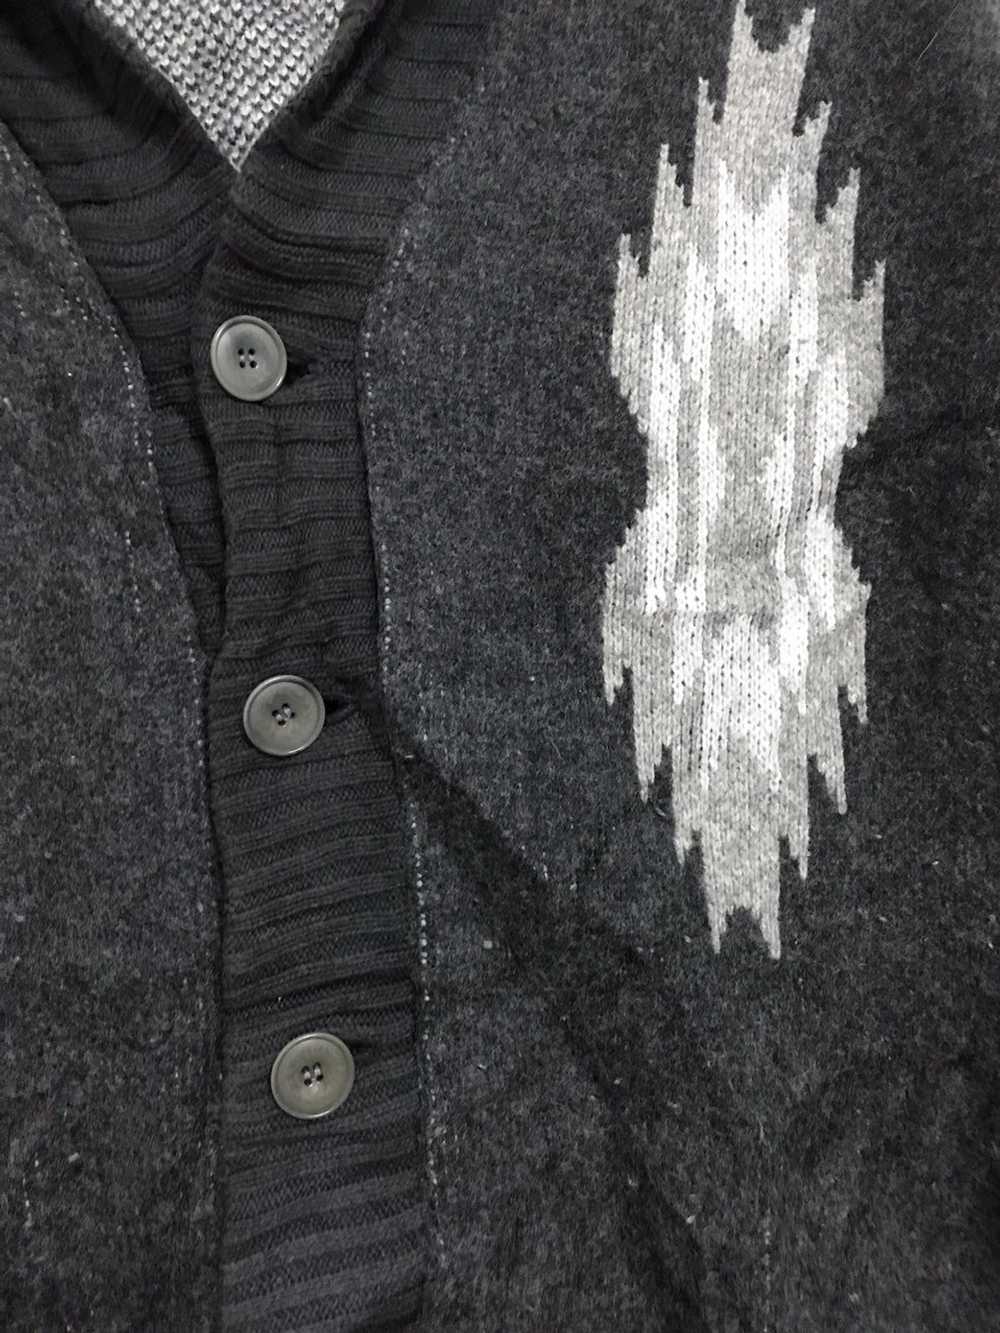 Japanese Brand Unisex Cardigan Sweater Native Chi… - image 6